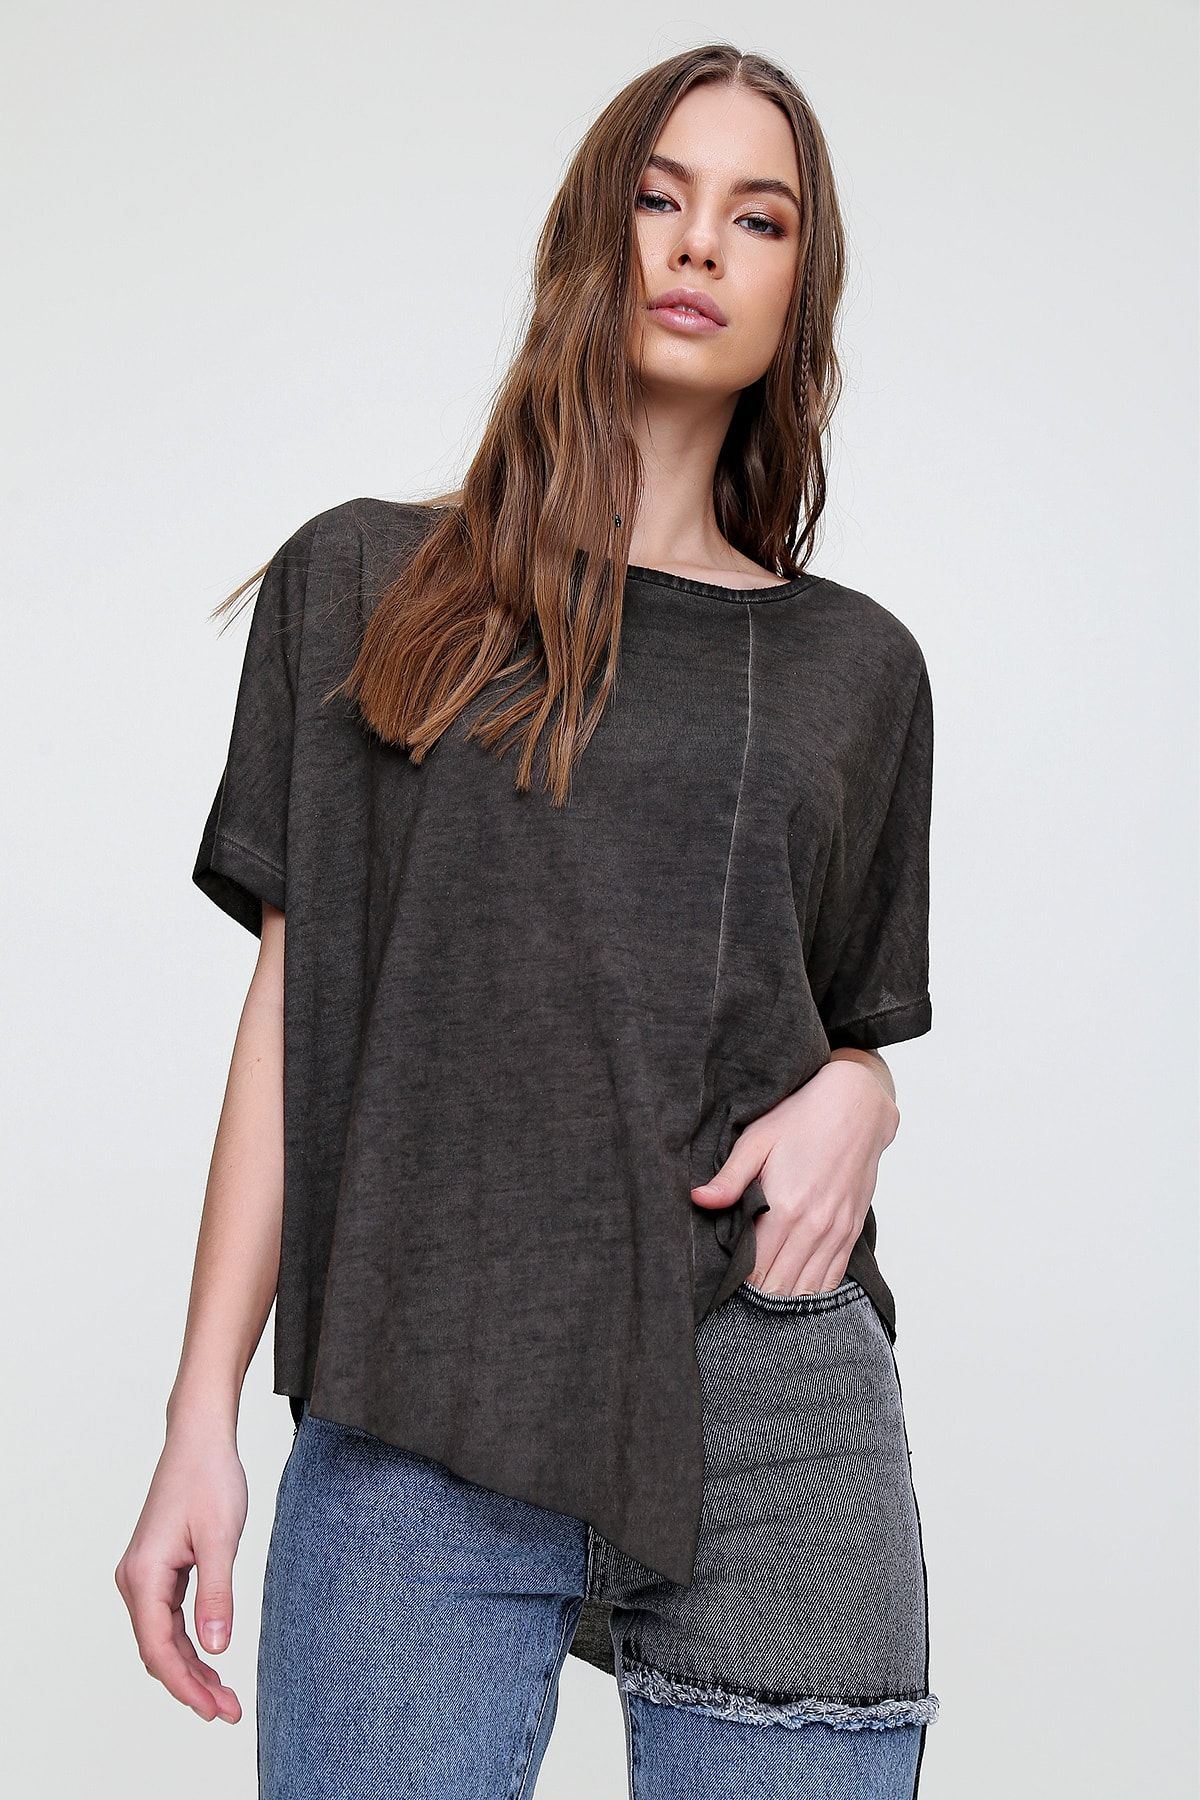 Trend Alaçatı Stili Kadın Antrasit Asimetrik Kesim Yıkamalı T-Shirt MDA-1128